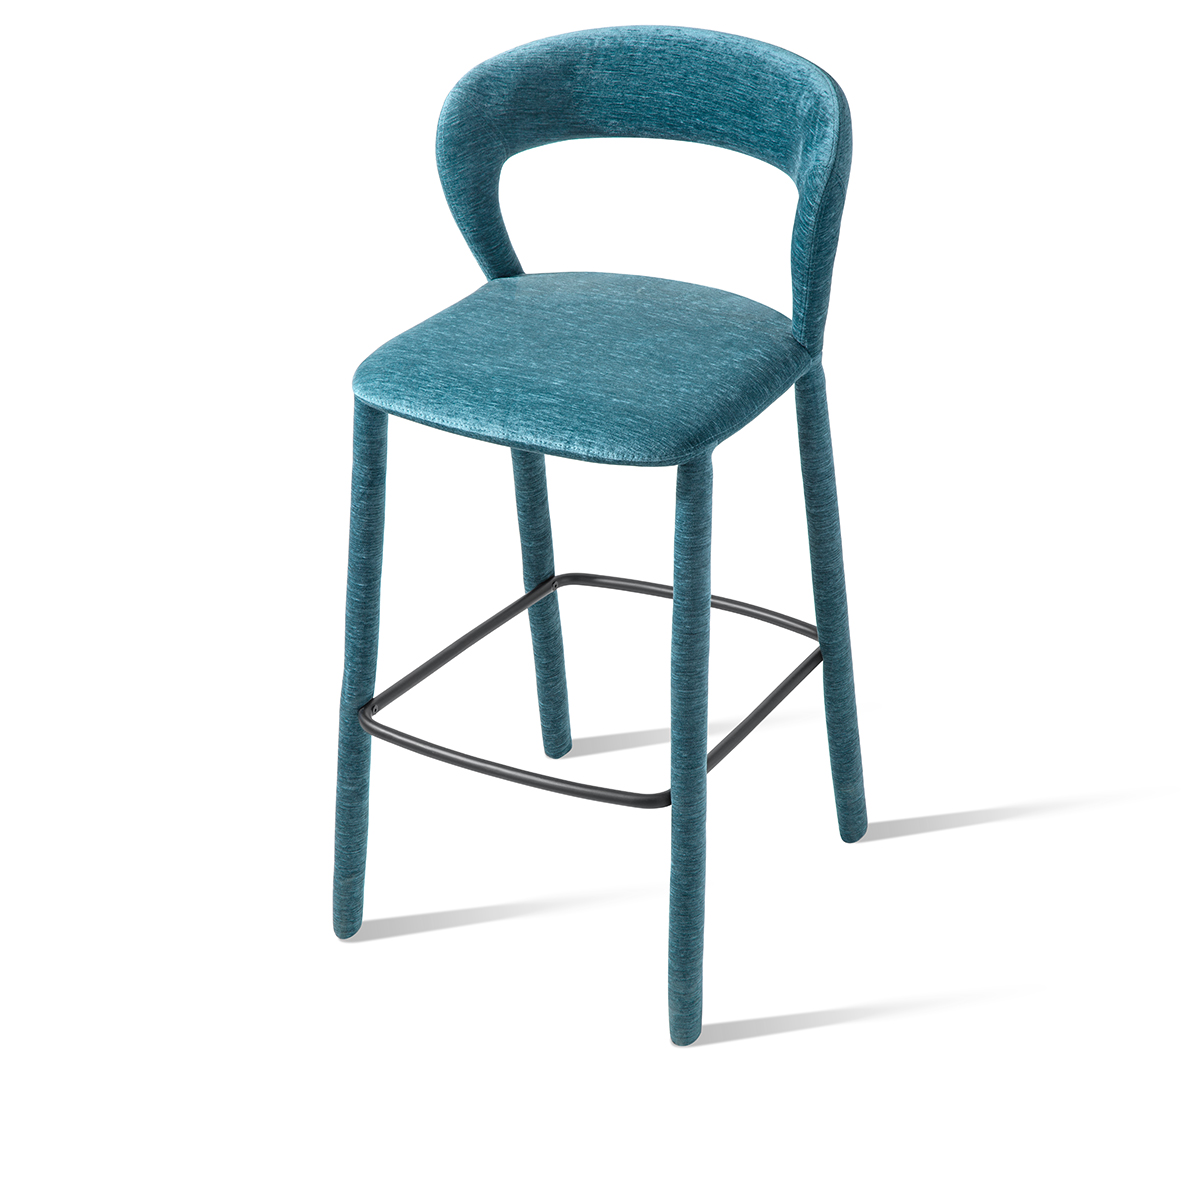 Tangla lighting - MC-9523B - Tangla Living - Bar Chair/Counter Chair LAKE